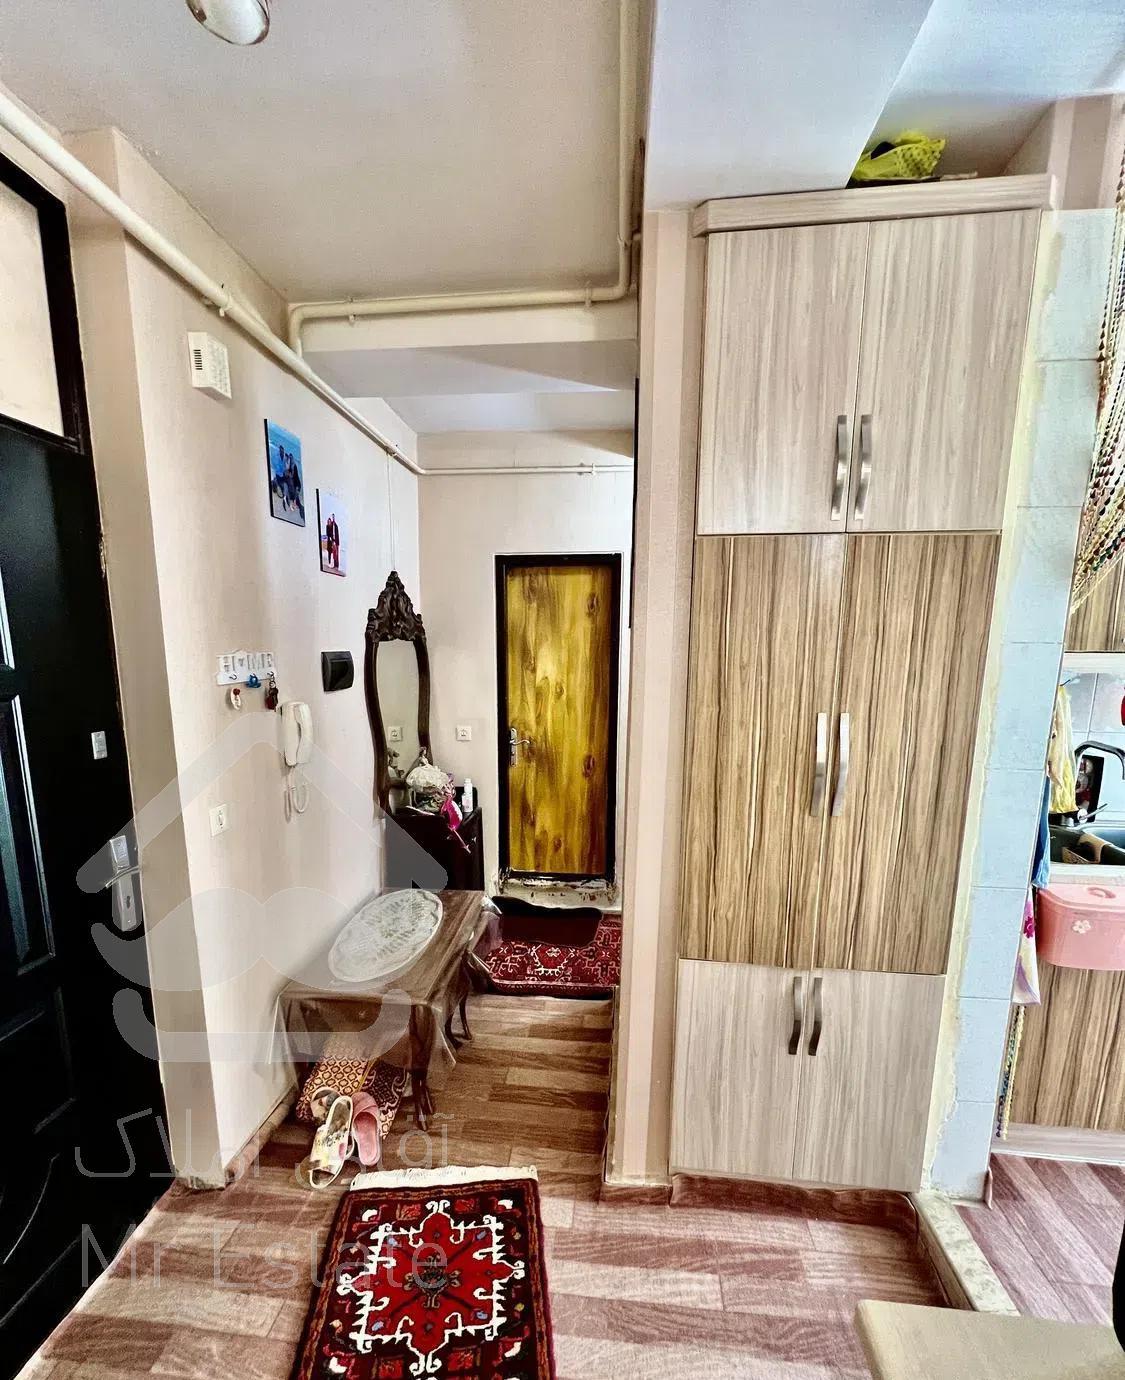 آپارتمان ۵۸ متر در باغمیشه مجتمع اروند اعیان ملک